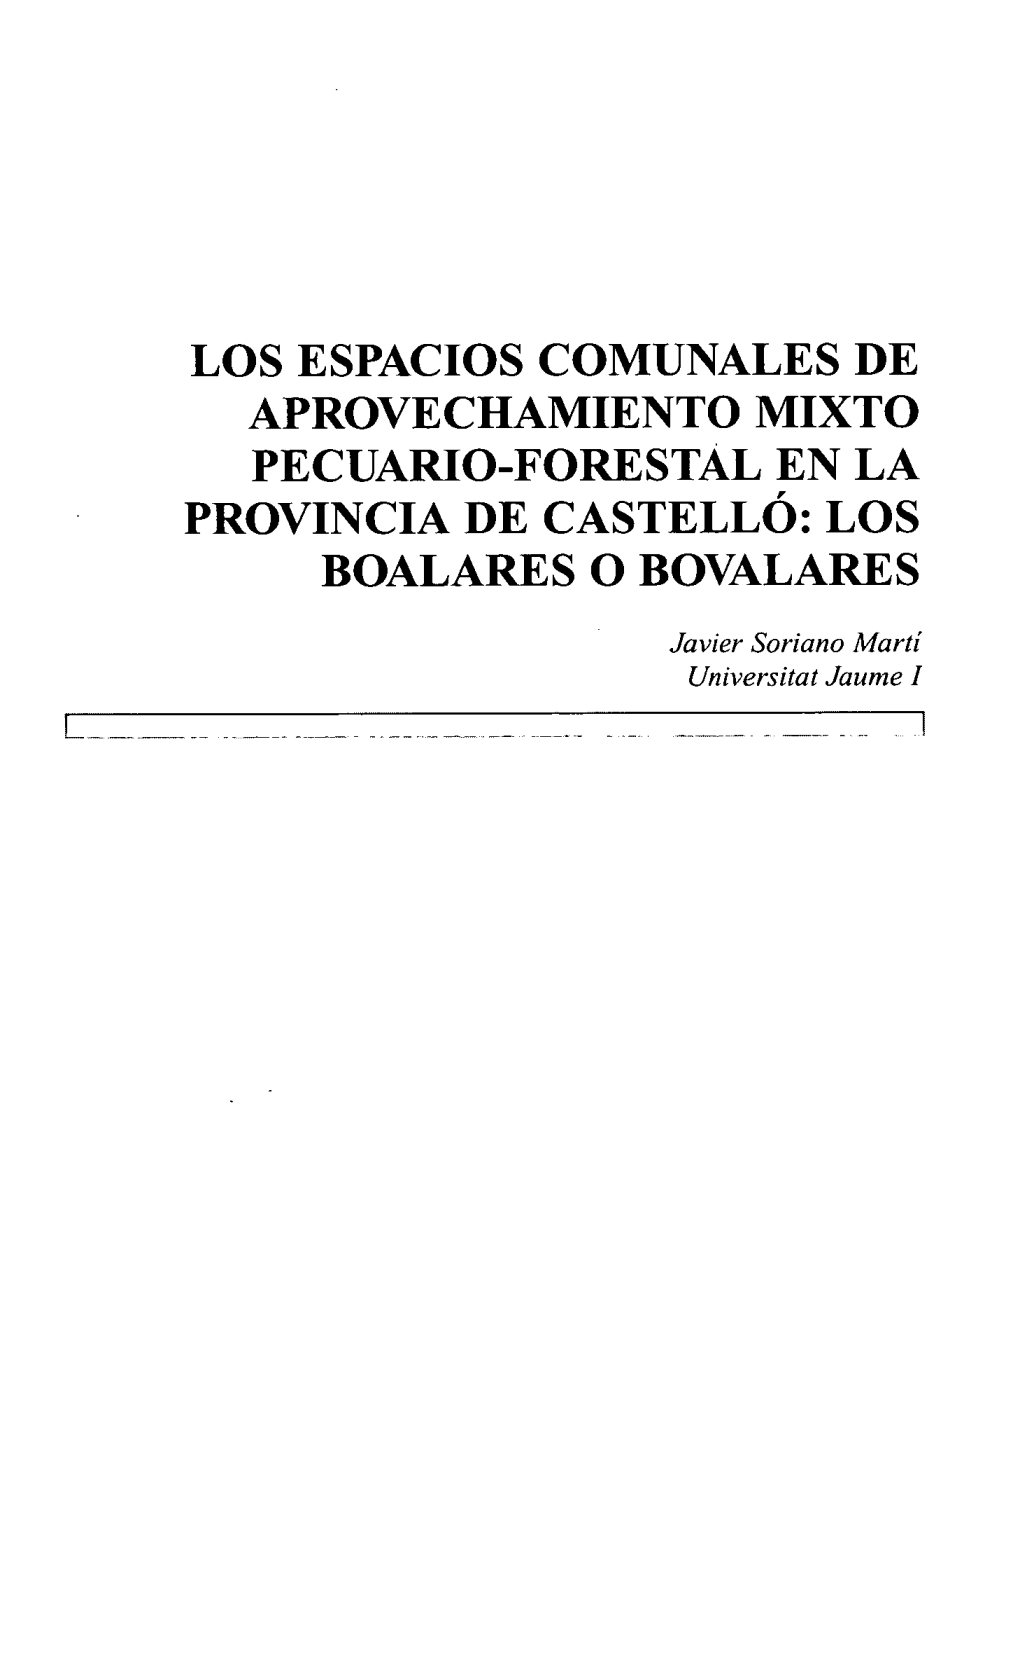 Los Espacios Comunales De Aprovechamiento Mixto Pecuario-Forestal En La Provincia De Castelló: Los Boalares O Bovalares